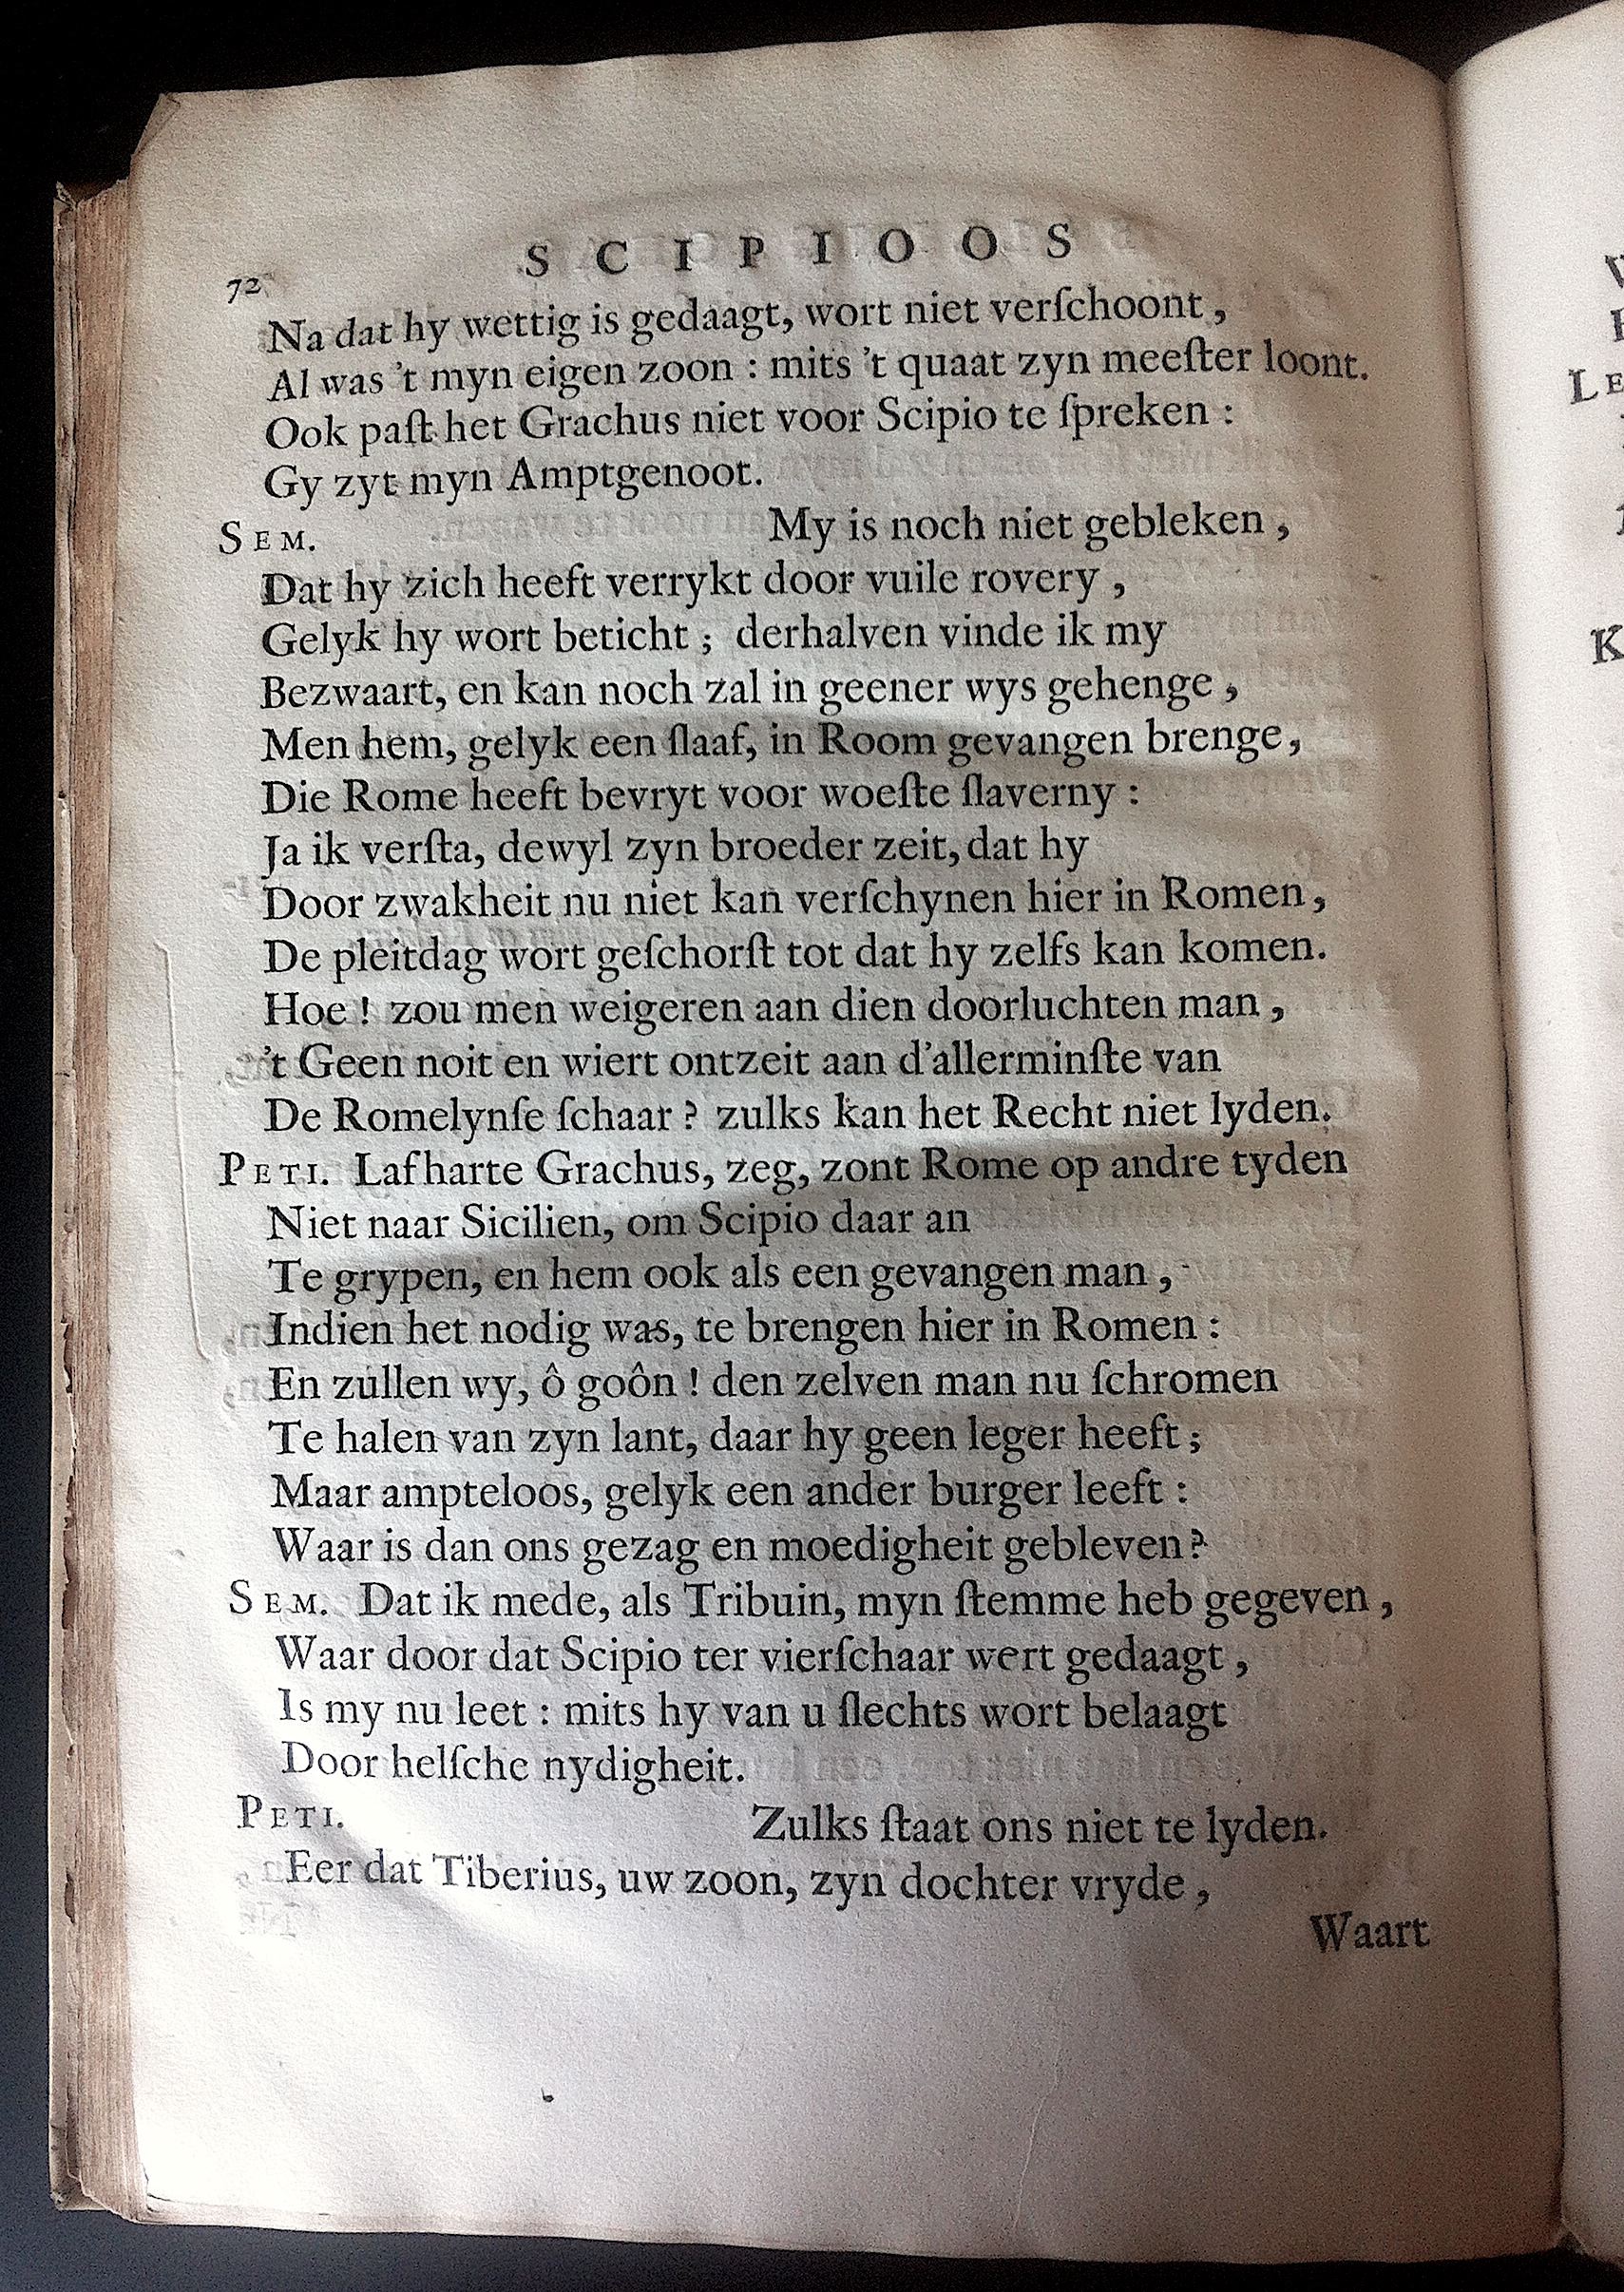 BoccardScipioFolio1658p72